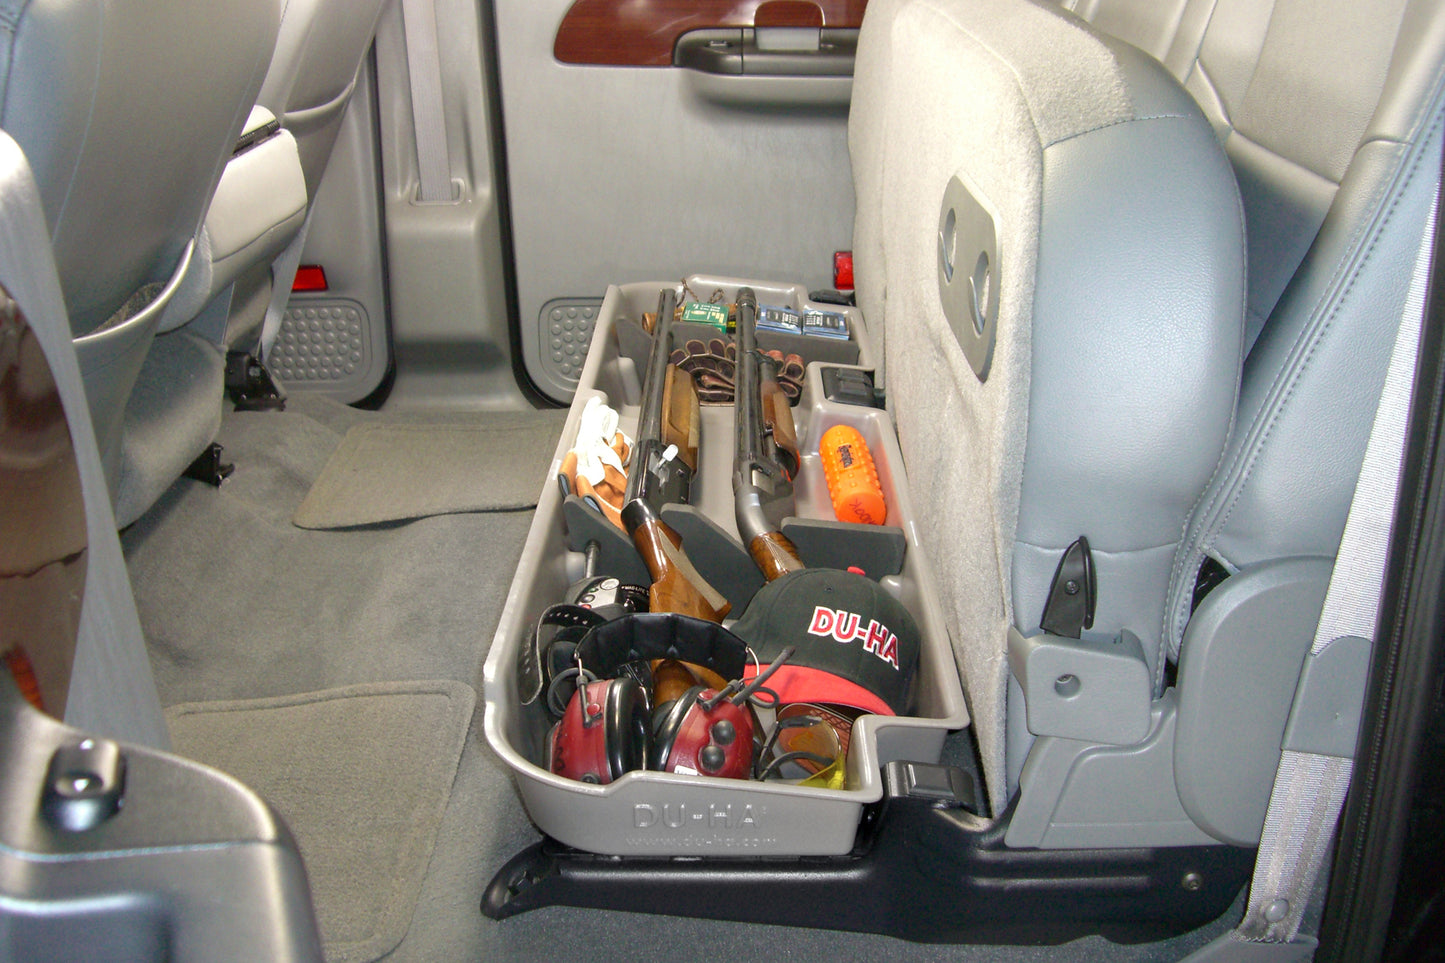 DU-HA 20067 Ford Underseat Storage Console Organizer And Gun Case - Black